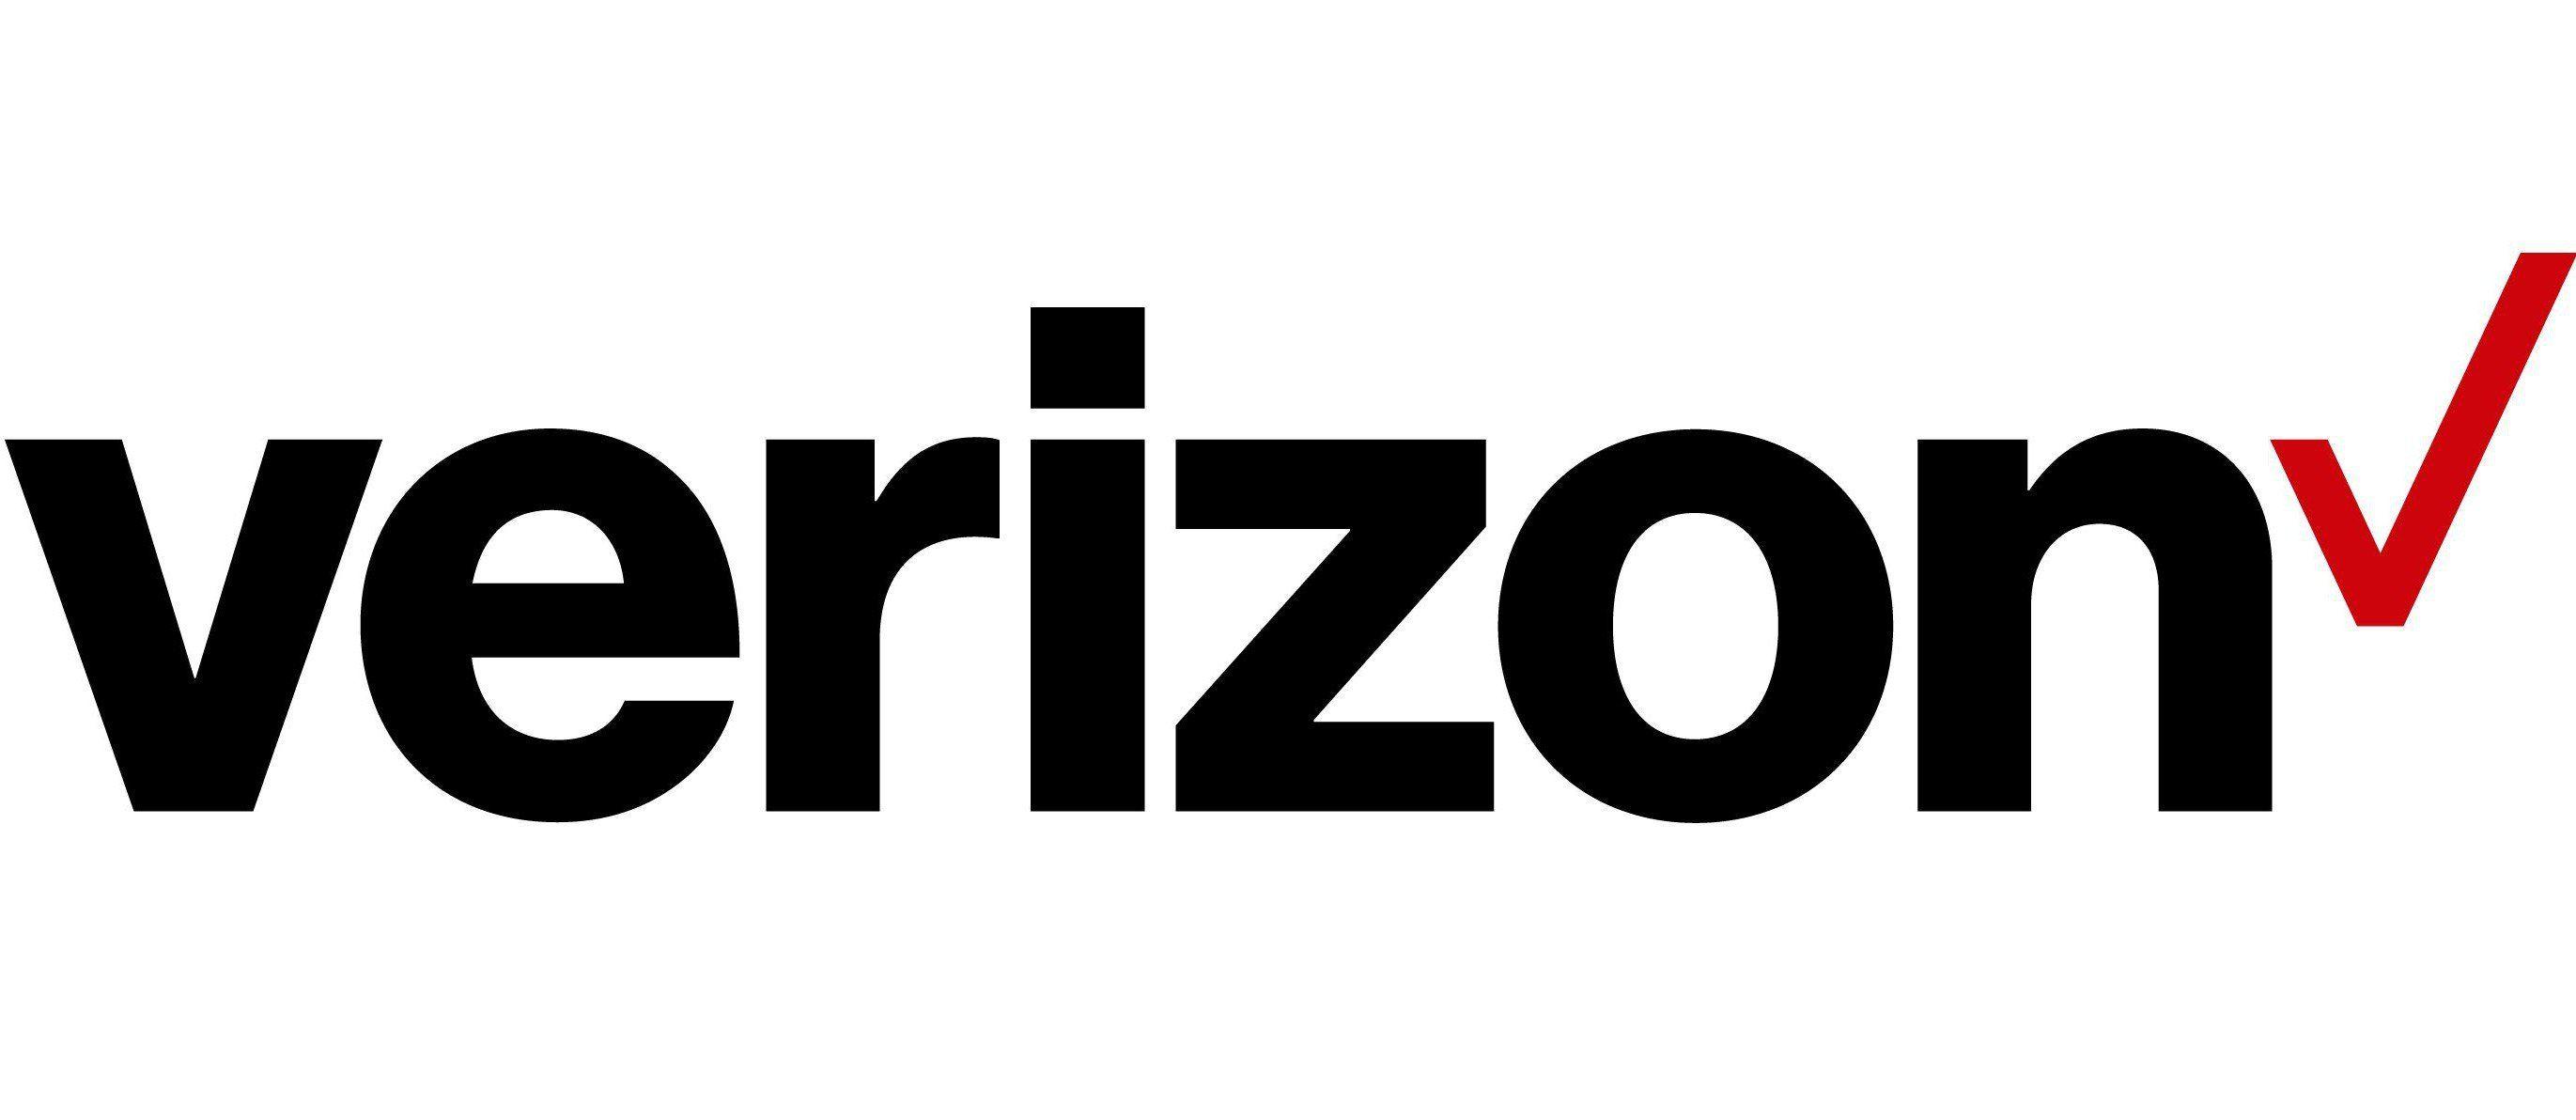 Verzion Logo - T-Mobile CEO mocks new Verizon logo | KFOR.com